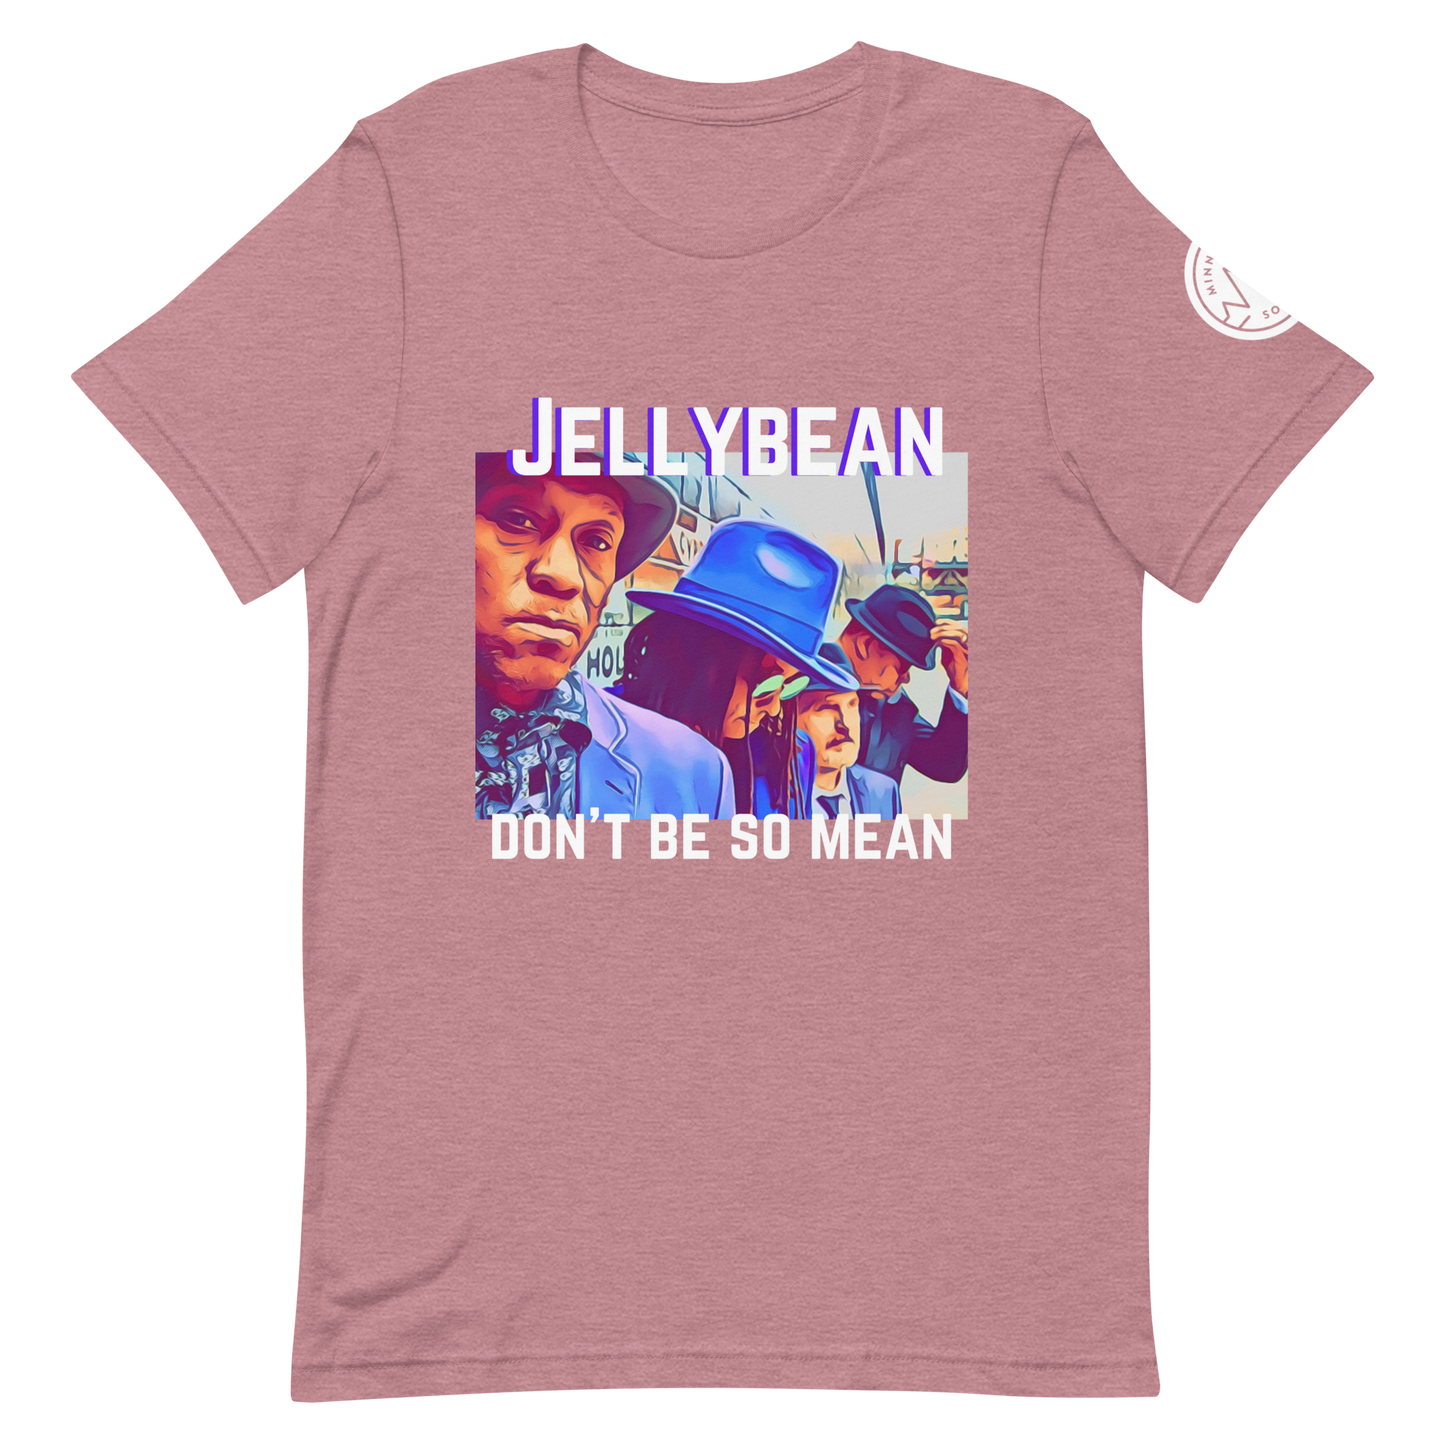 Jellybean, Don't Be So Mean T-Shirt